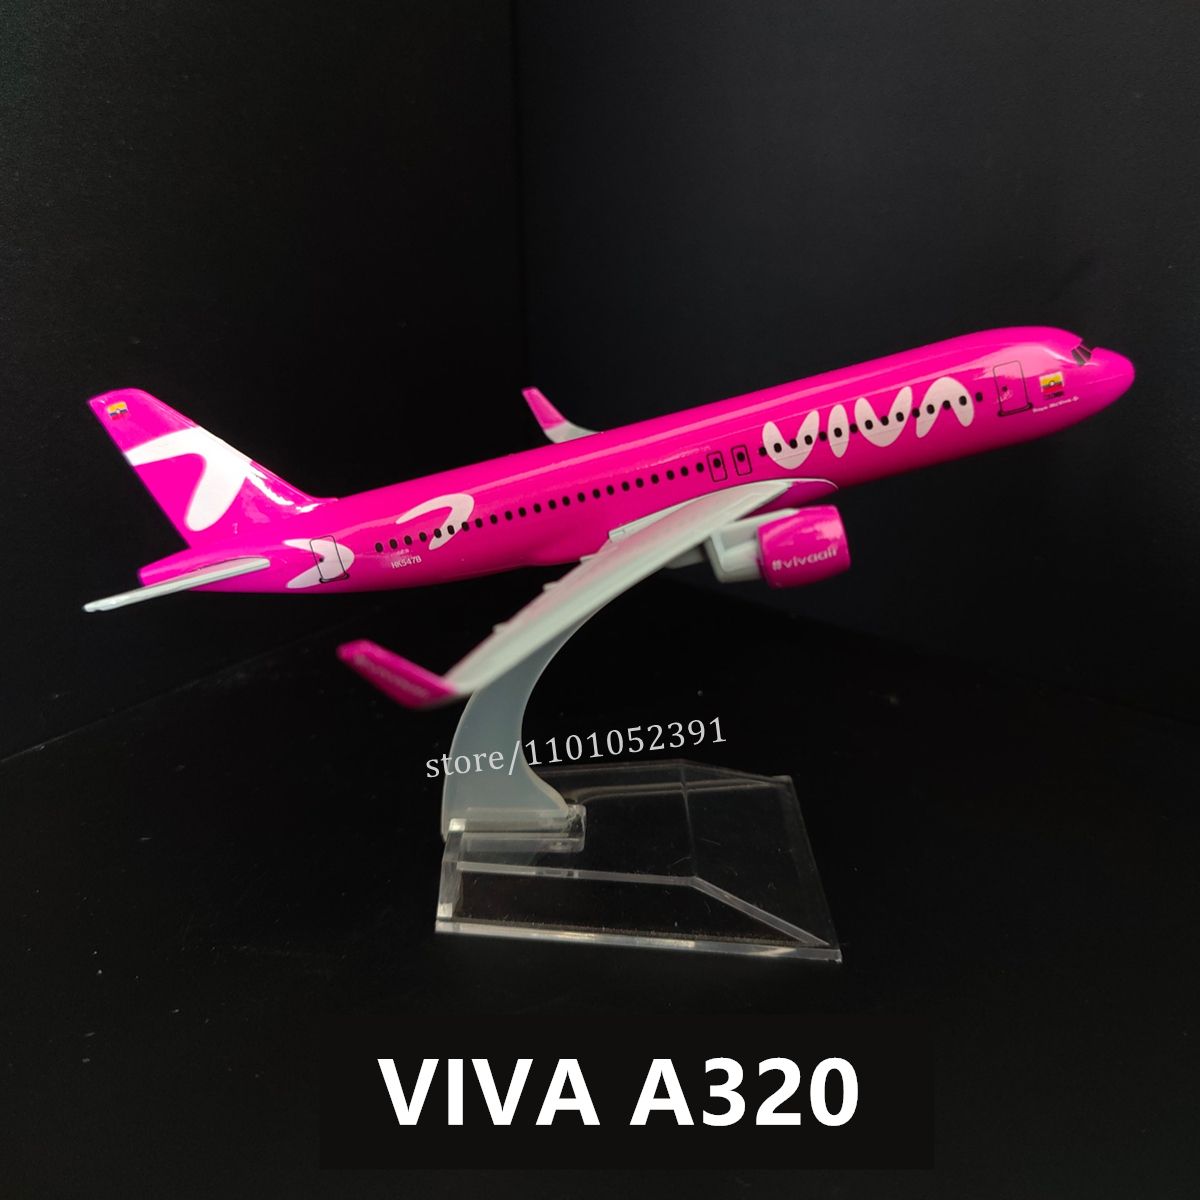 162. Viva A320